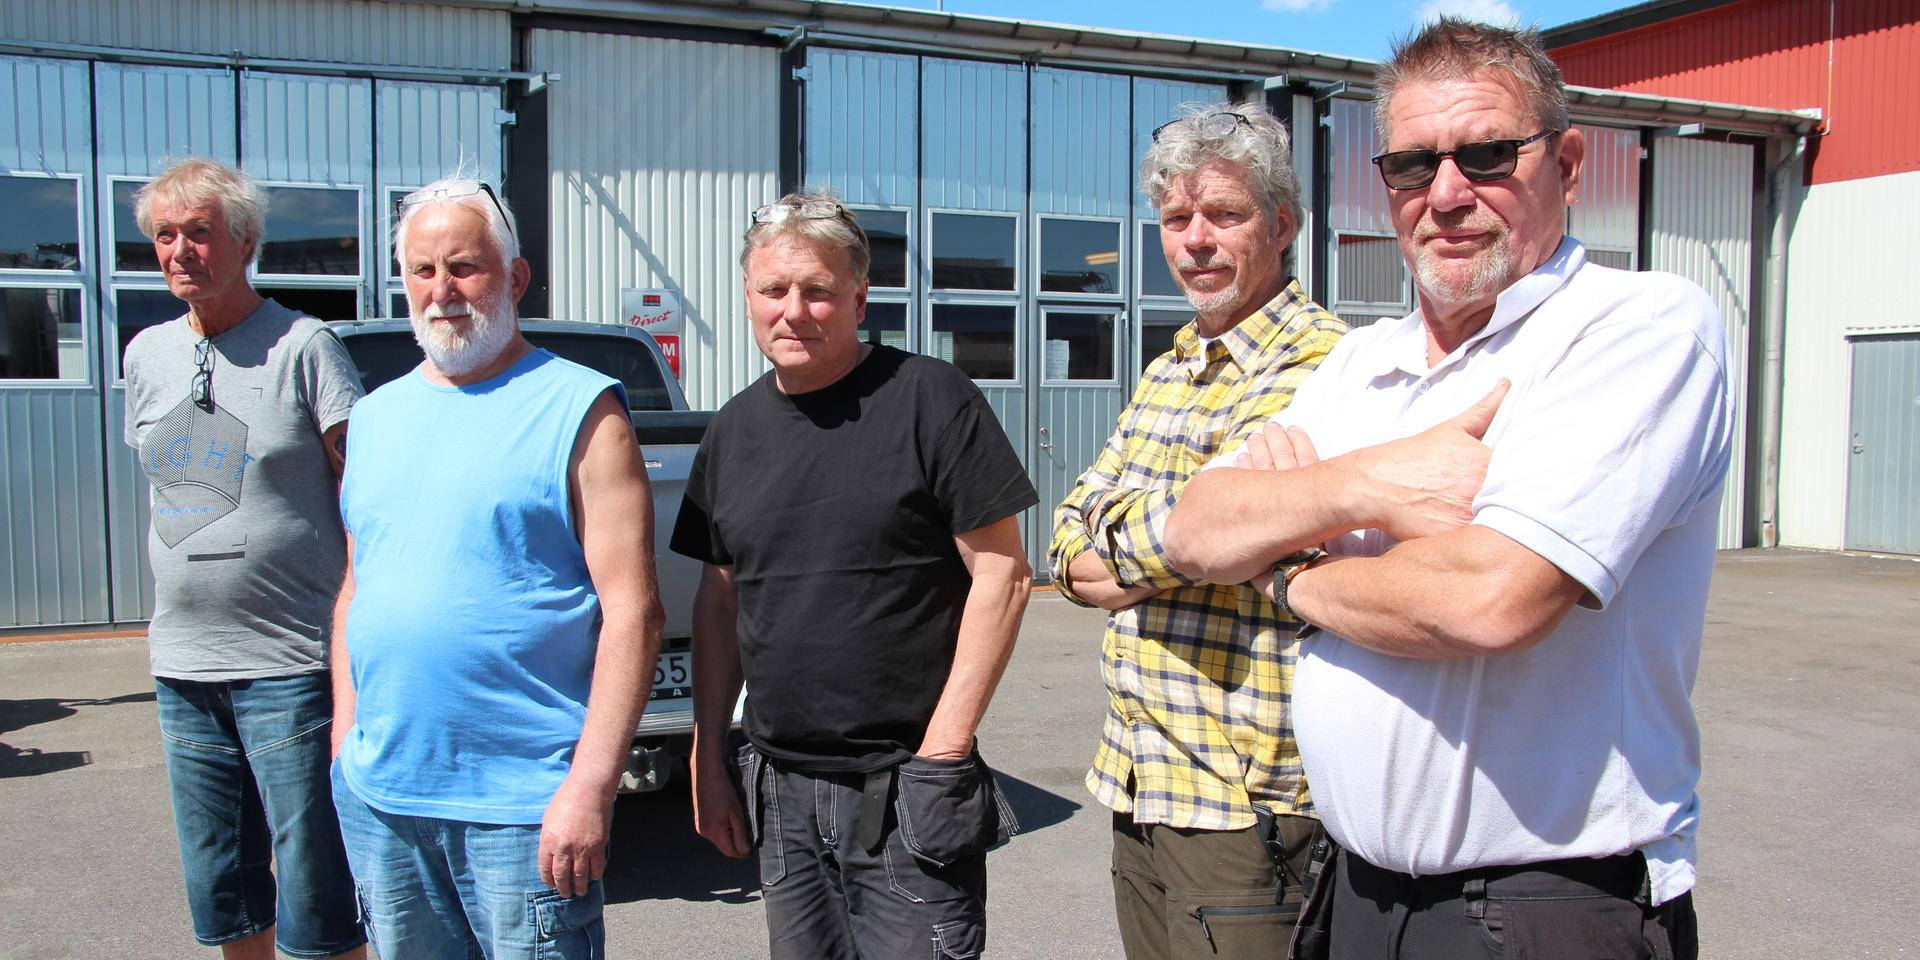 Leif Svensson, Lars-Erik Markusson, Michael Cedergren, Sven-Olov Molin och Morgan Johansson är fem av dem som stämts på miljonbelopp för vägslingan in till Stora Höga södra industriområde.